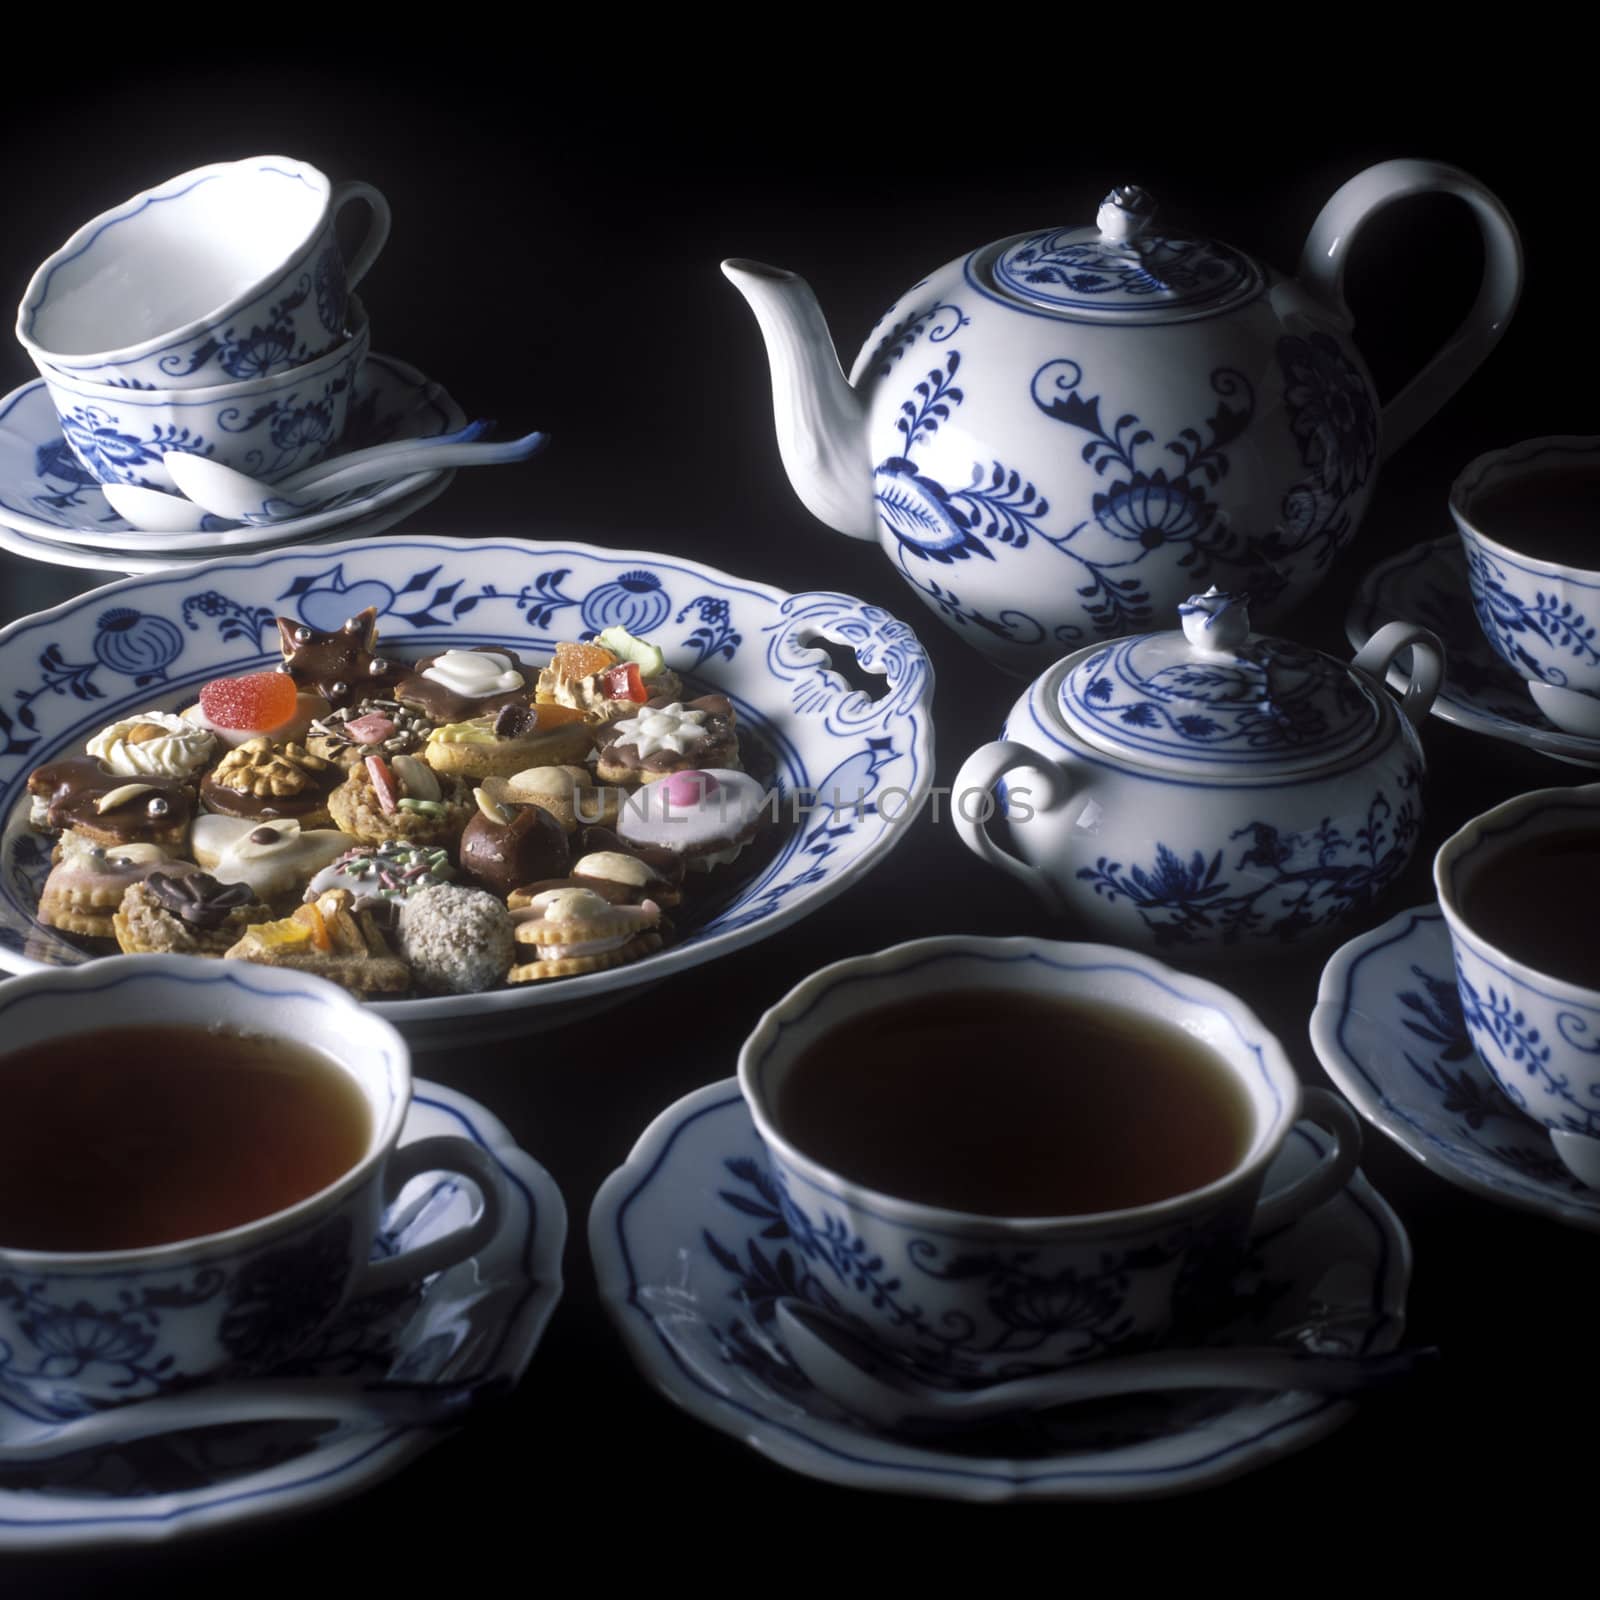 tea set by phbcz